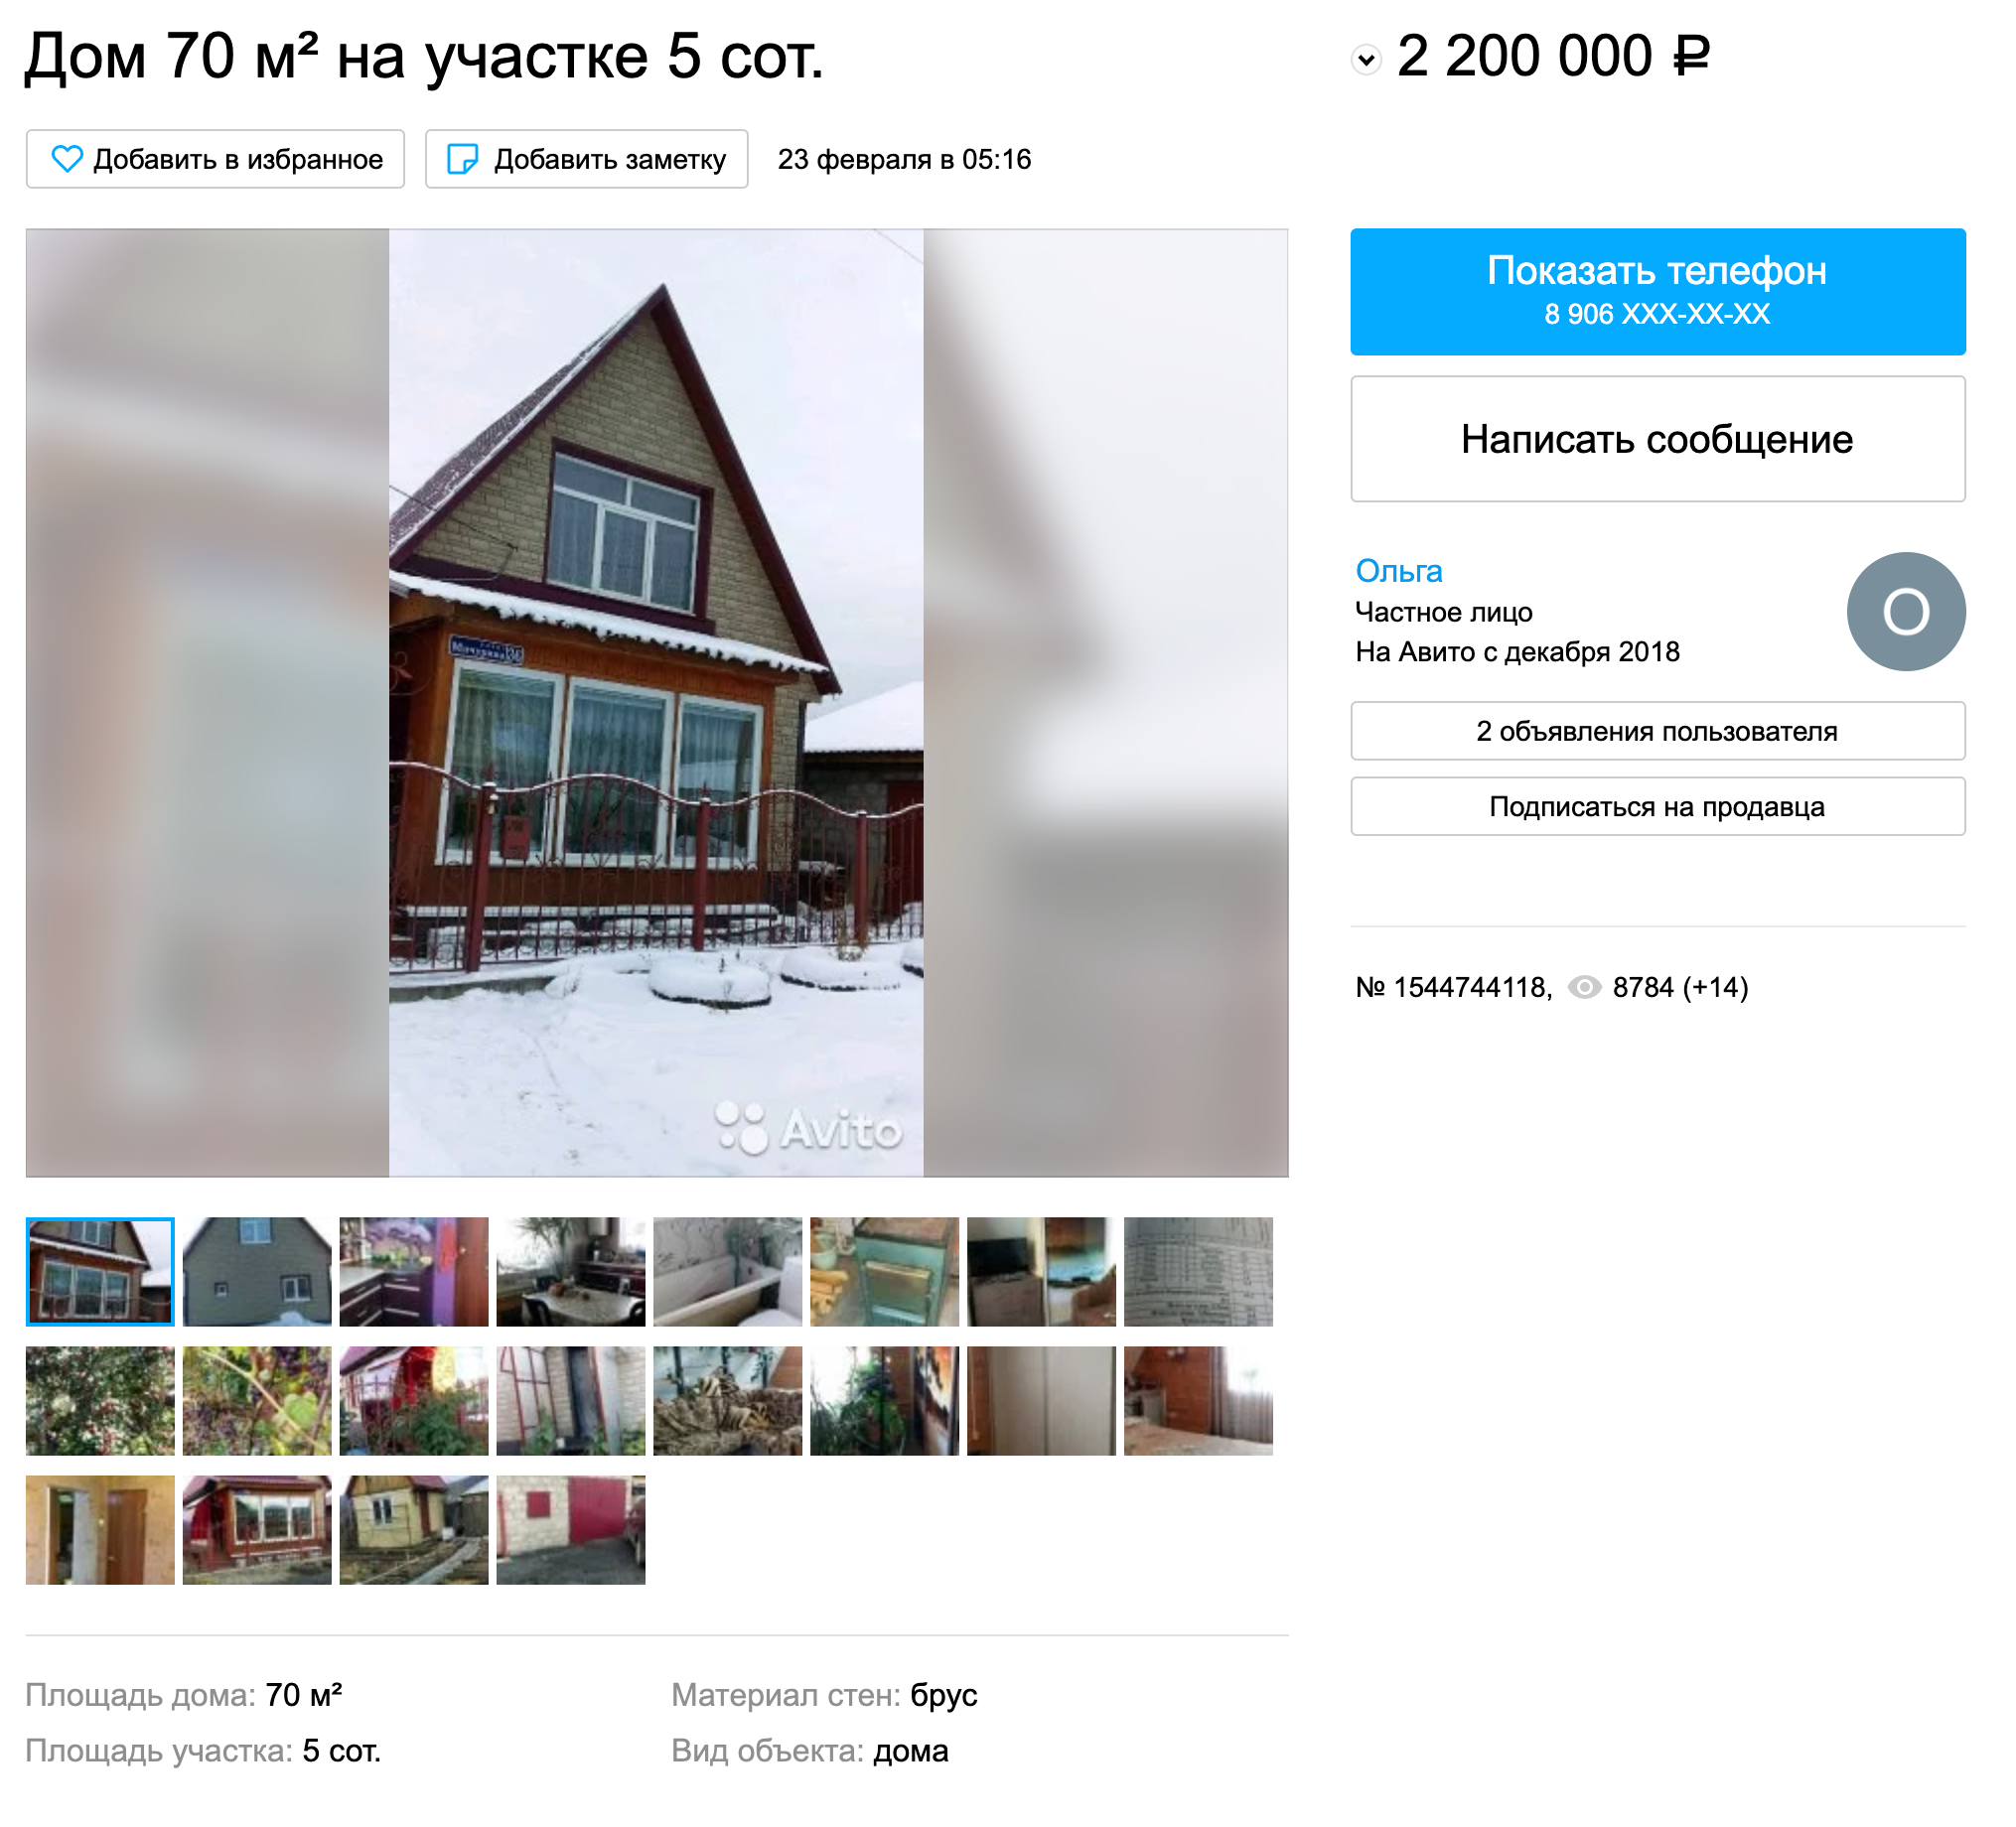 Недвижимость в Новочеркасске | ВКонтакте